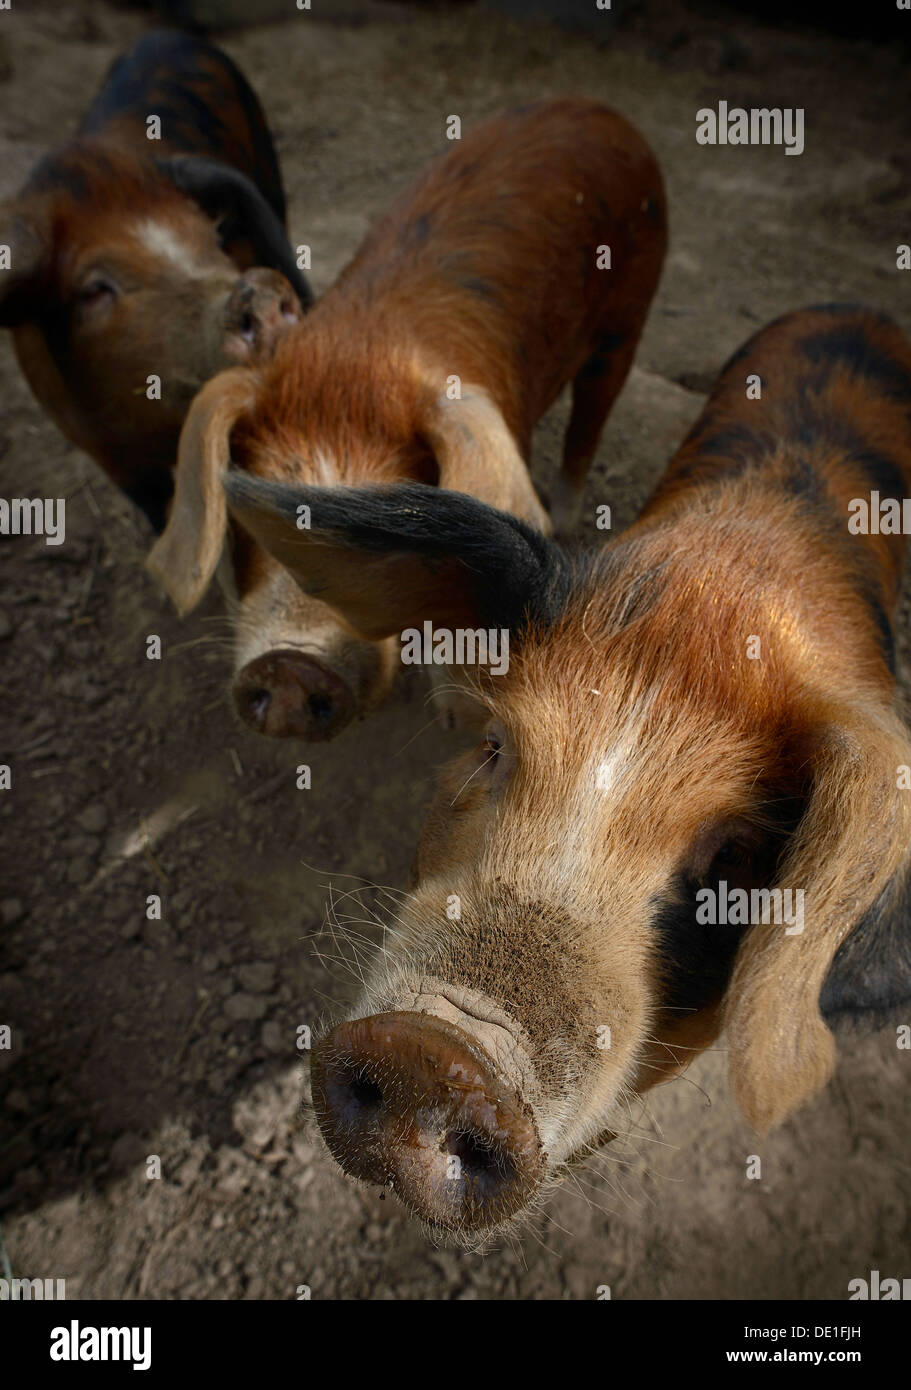 Le portrait d'une ferme sur les porcs Banque D'Images